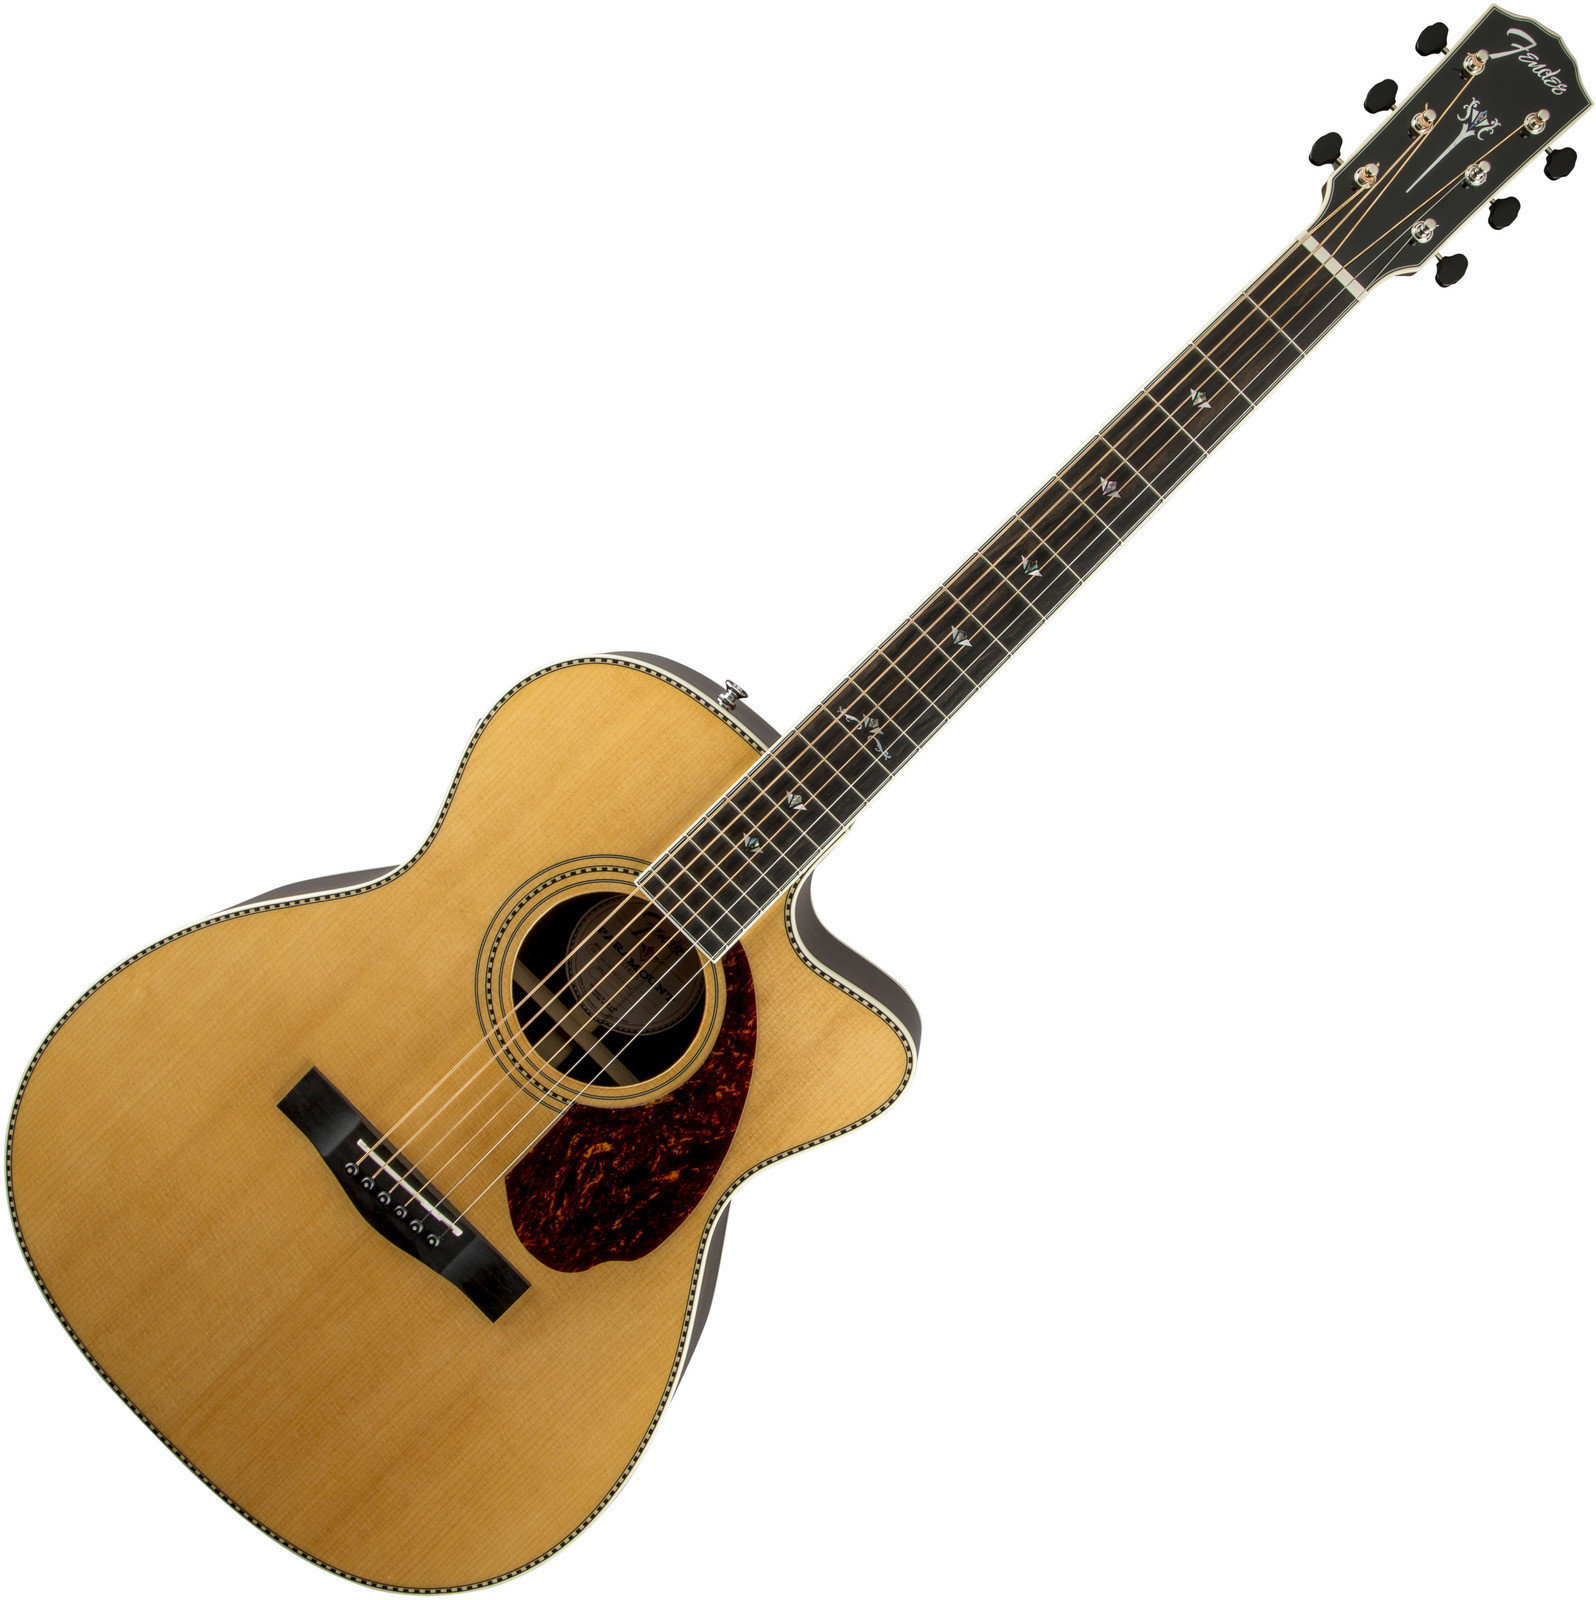 Ηλεκτροακουστική Κιθάρα Fender PM-3 Deluxe Triple 0, Natural